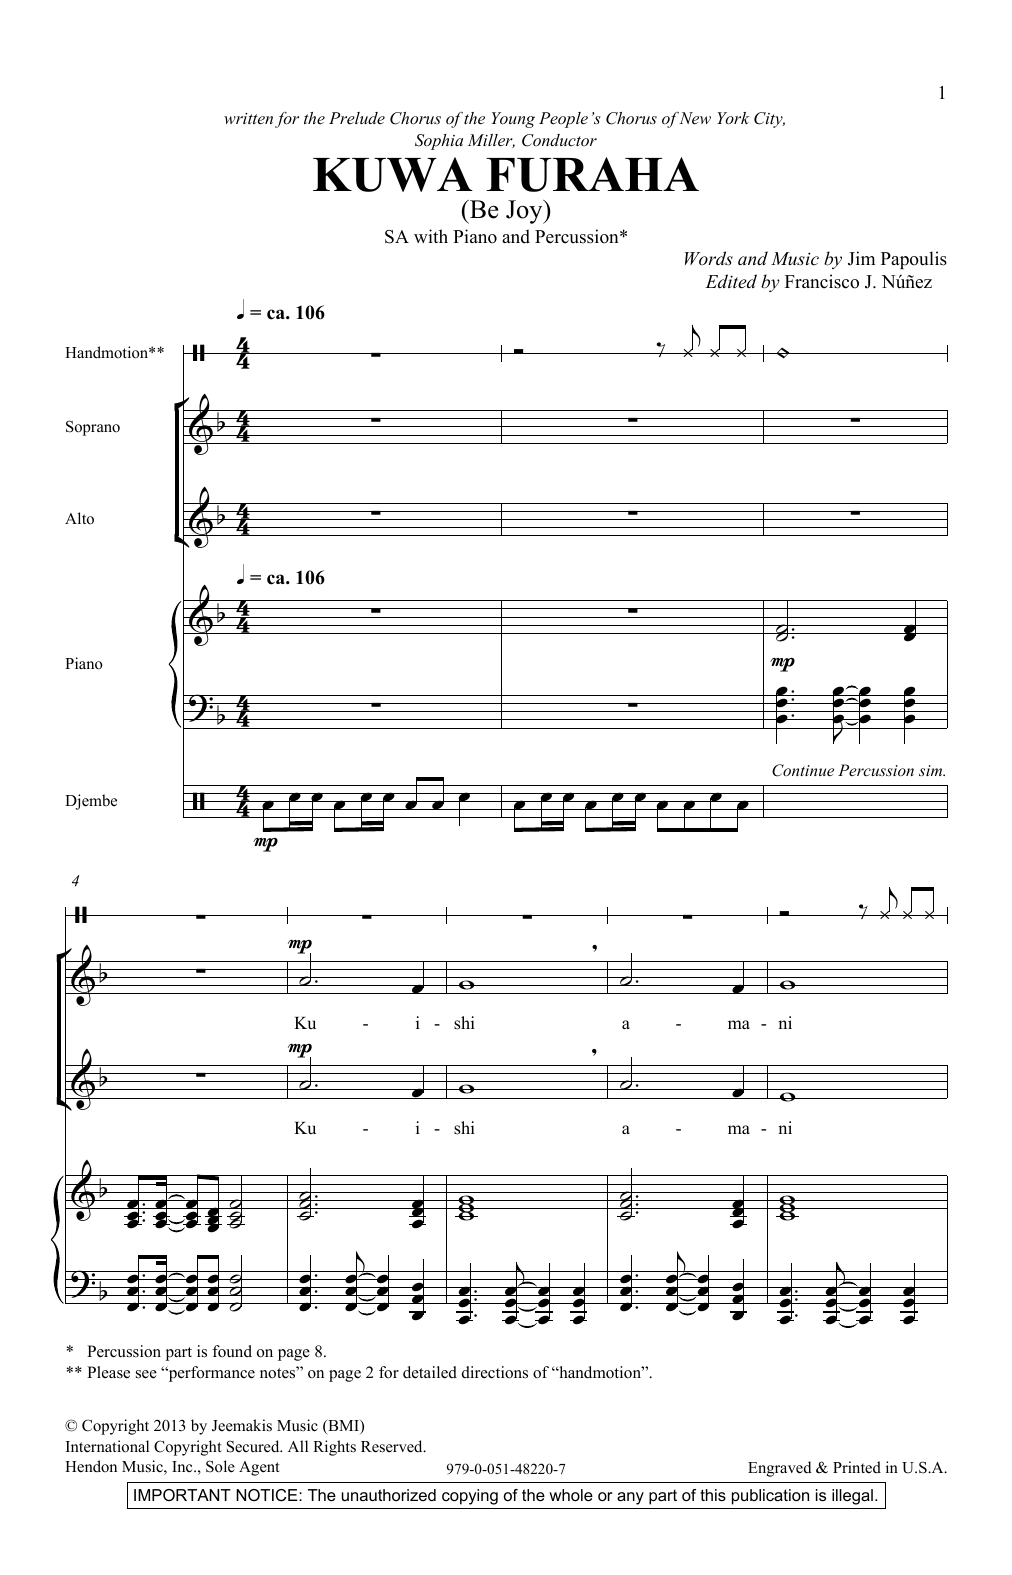 Jim Papoulis Kuwa Furaha Sheet Music Notes & Chords for SAB - Download or Print PDF